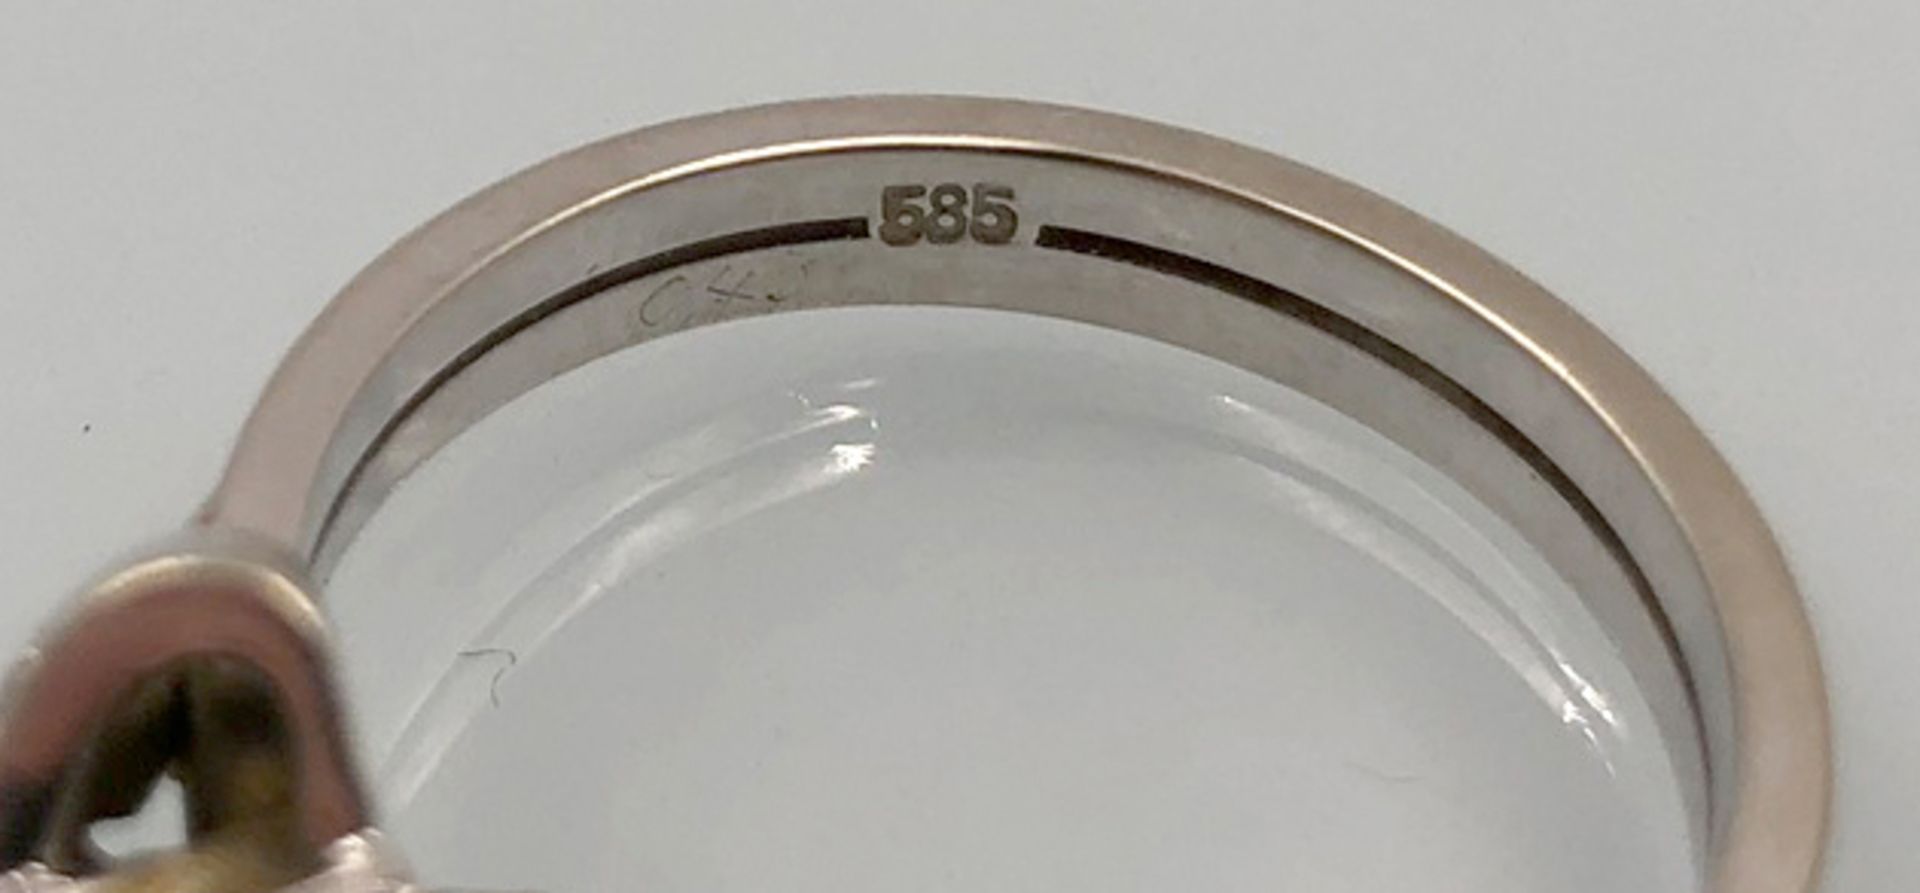 Weiß Gold 585. Ring mit Brillanten.4,0 Gramm Gesamtgewicht. Der mittige Diamant 4,48 mm Durchmesser, - Bild 11 aus 13